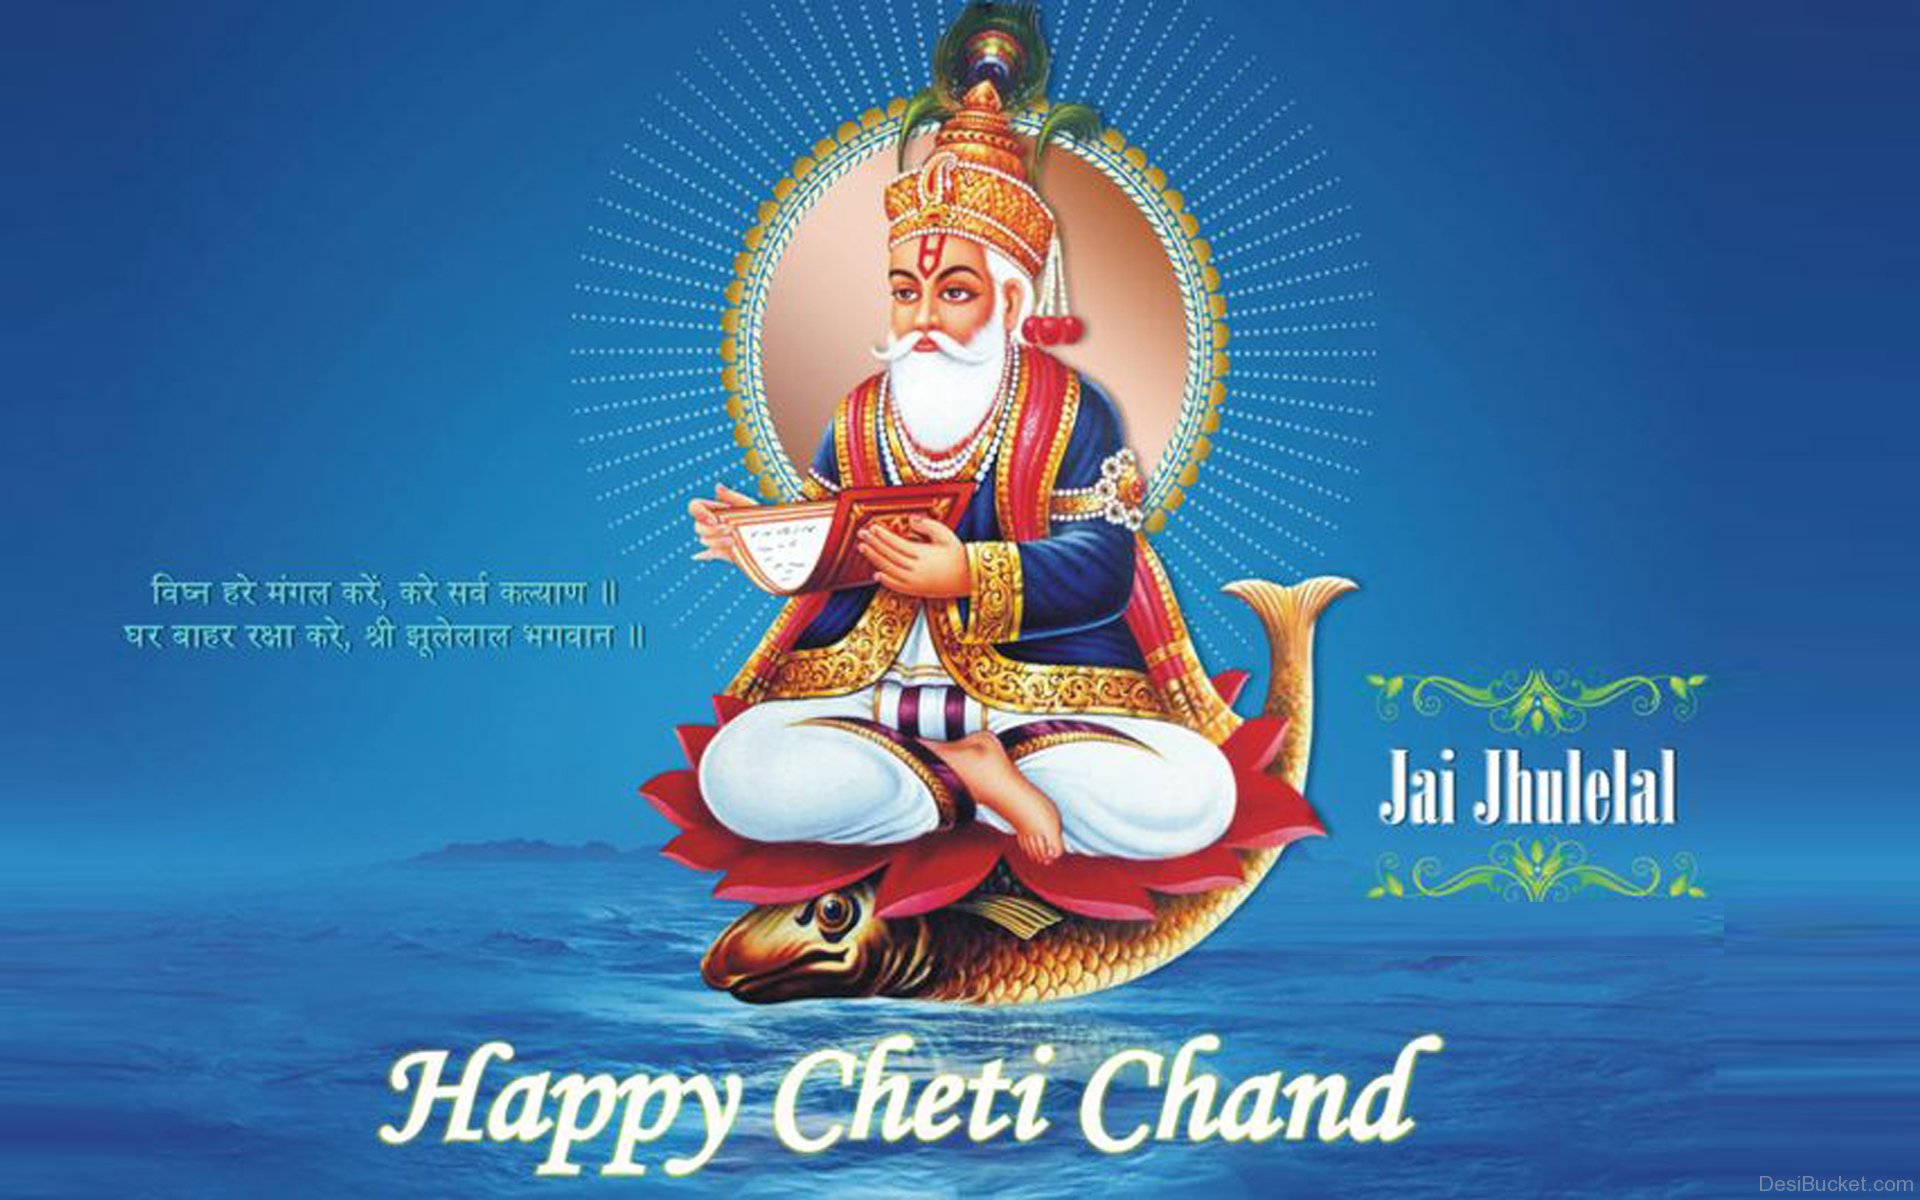 Happy-Cheti-Chand-Wishes